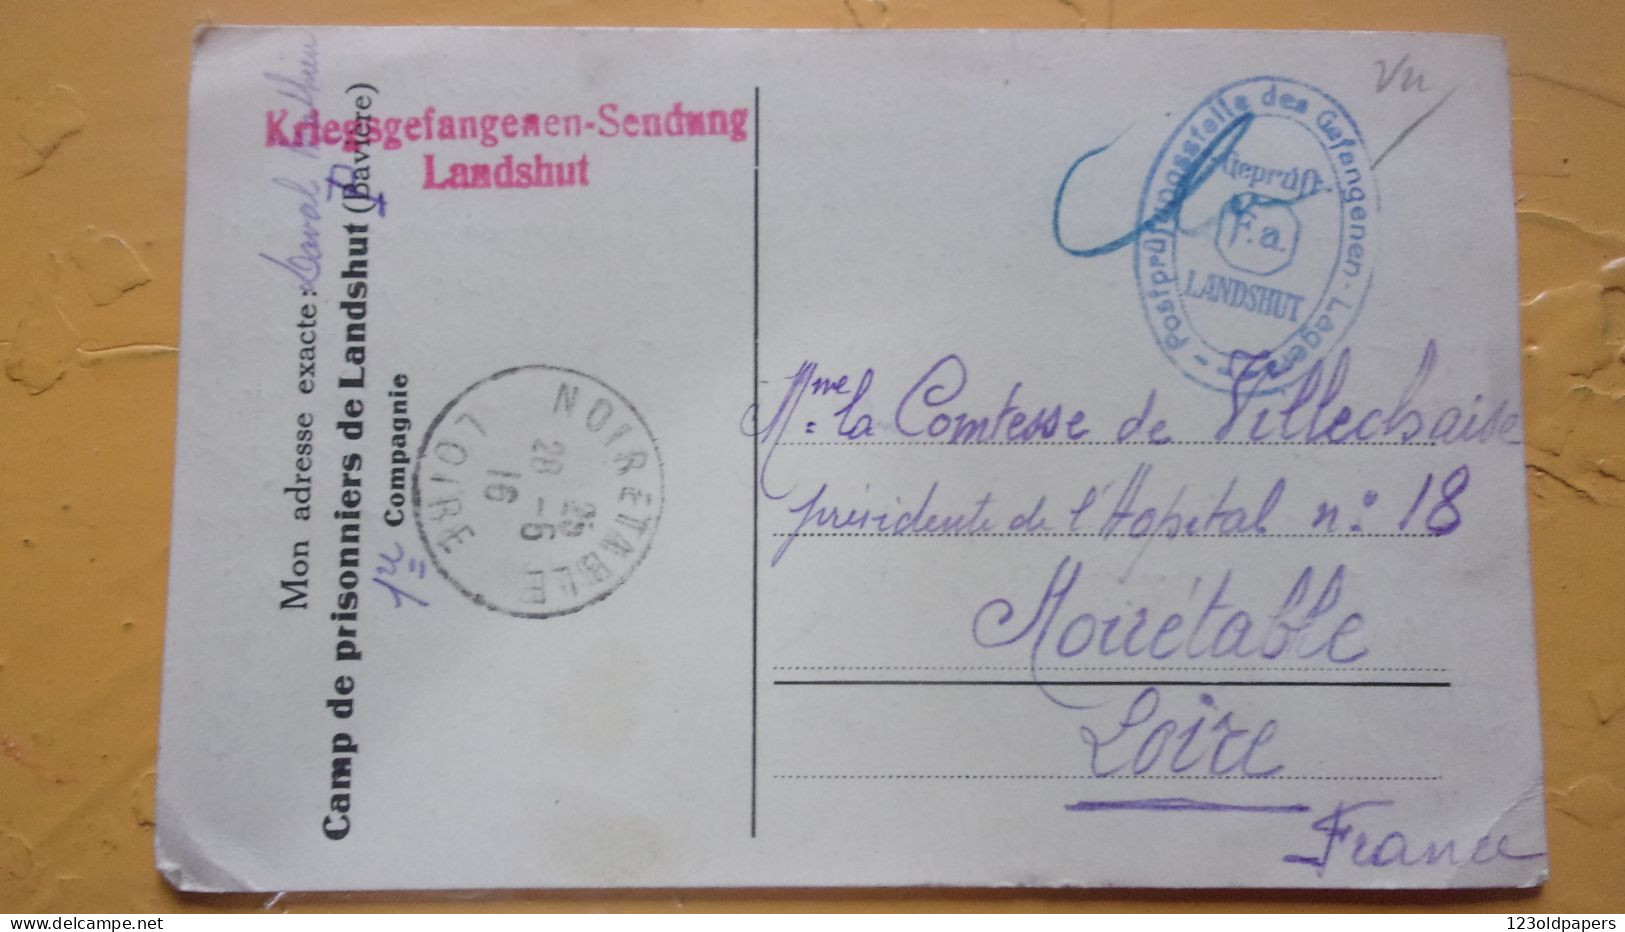 WWI LANDSHUT KRIEGSGEFANGENENDUNG COMITE SECOURS COMTESSE DE VILLECHAISE NOIRETABLE - Prisoners Of War Mail